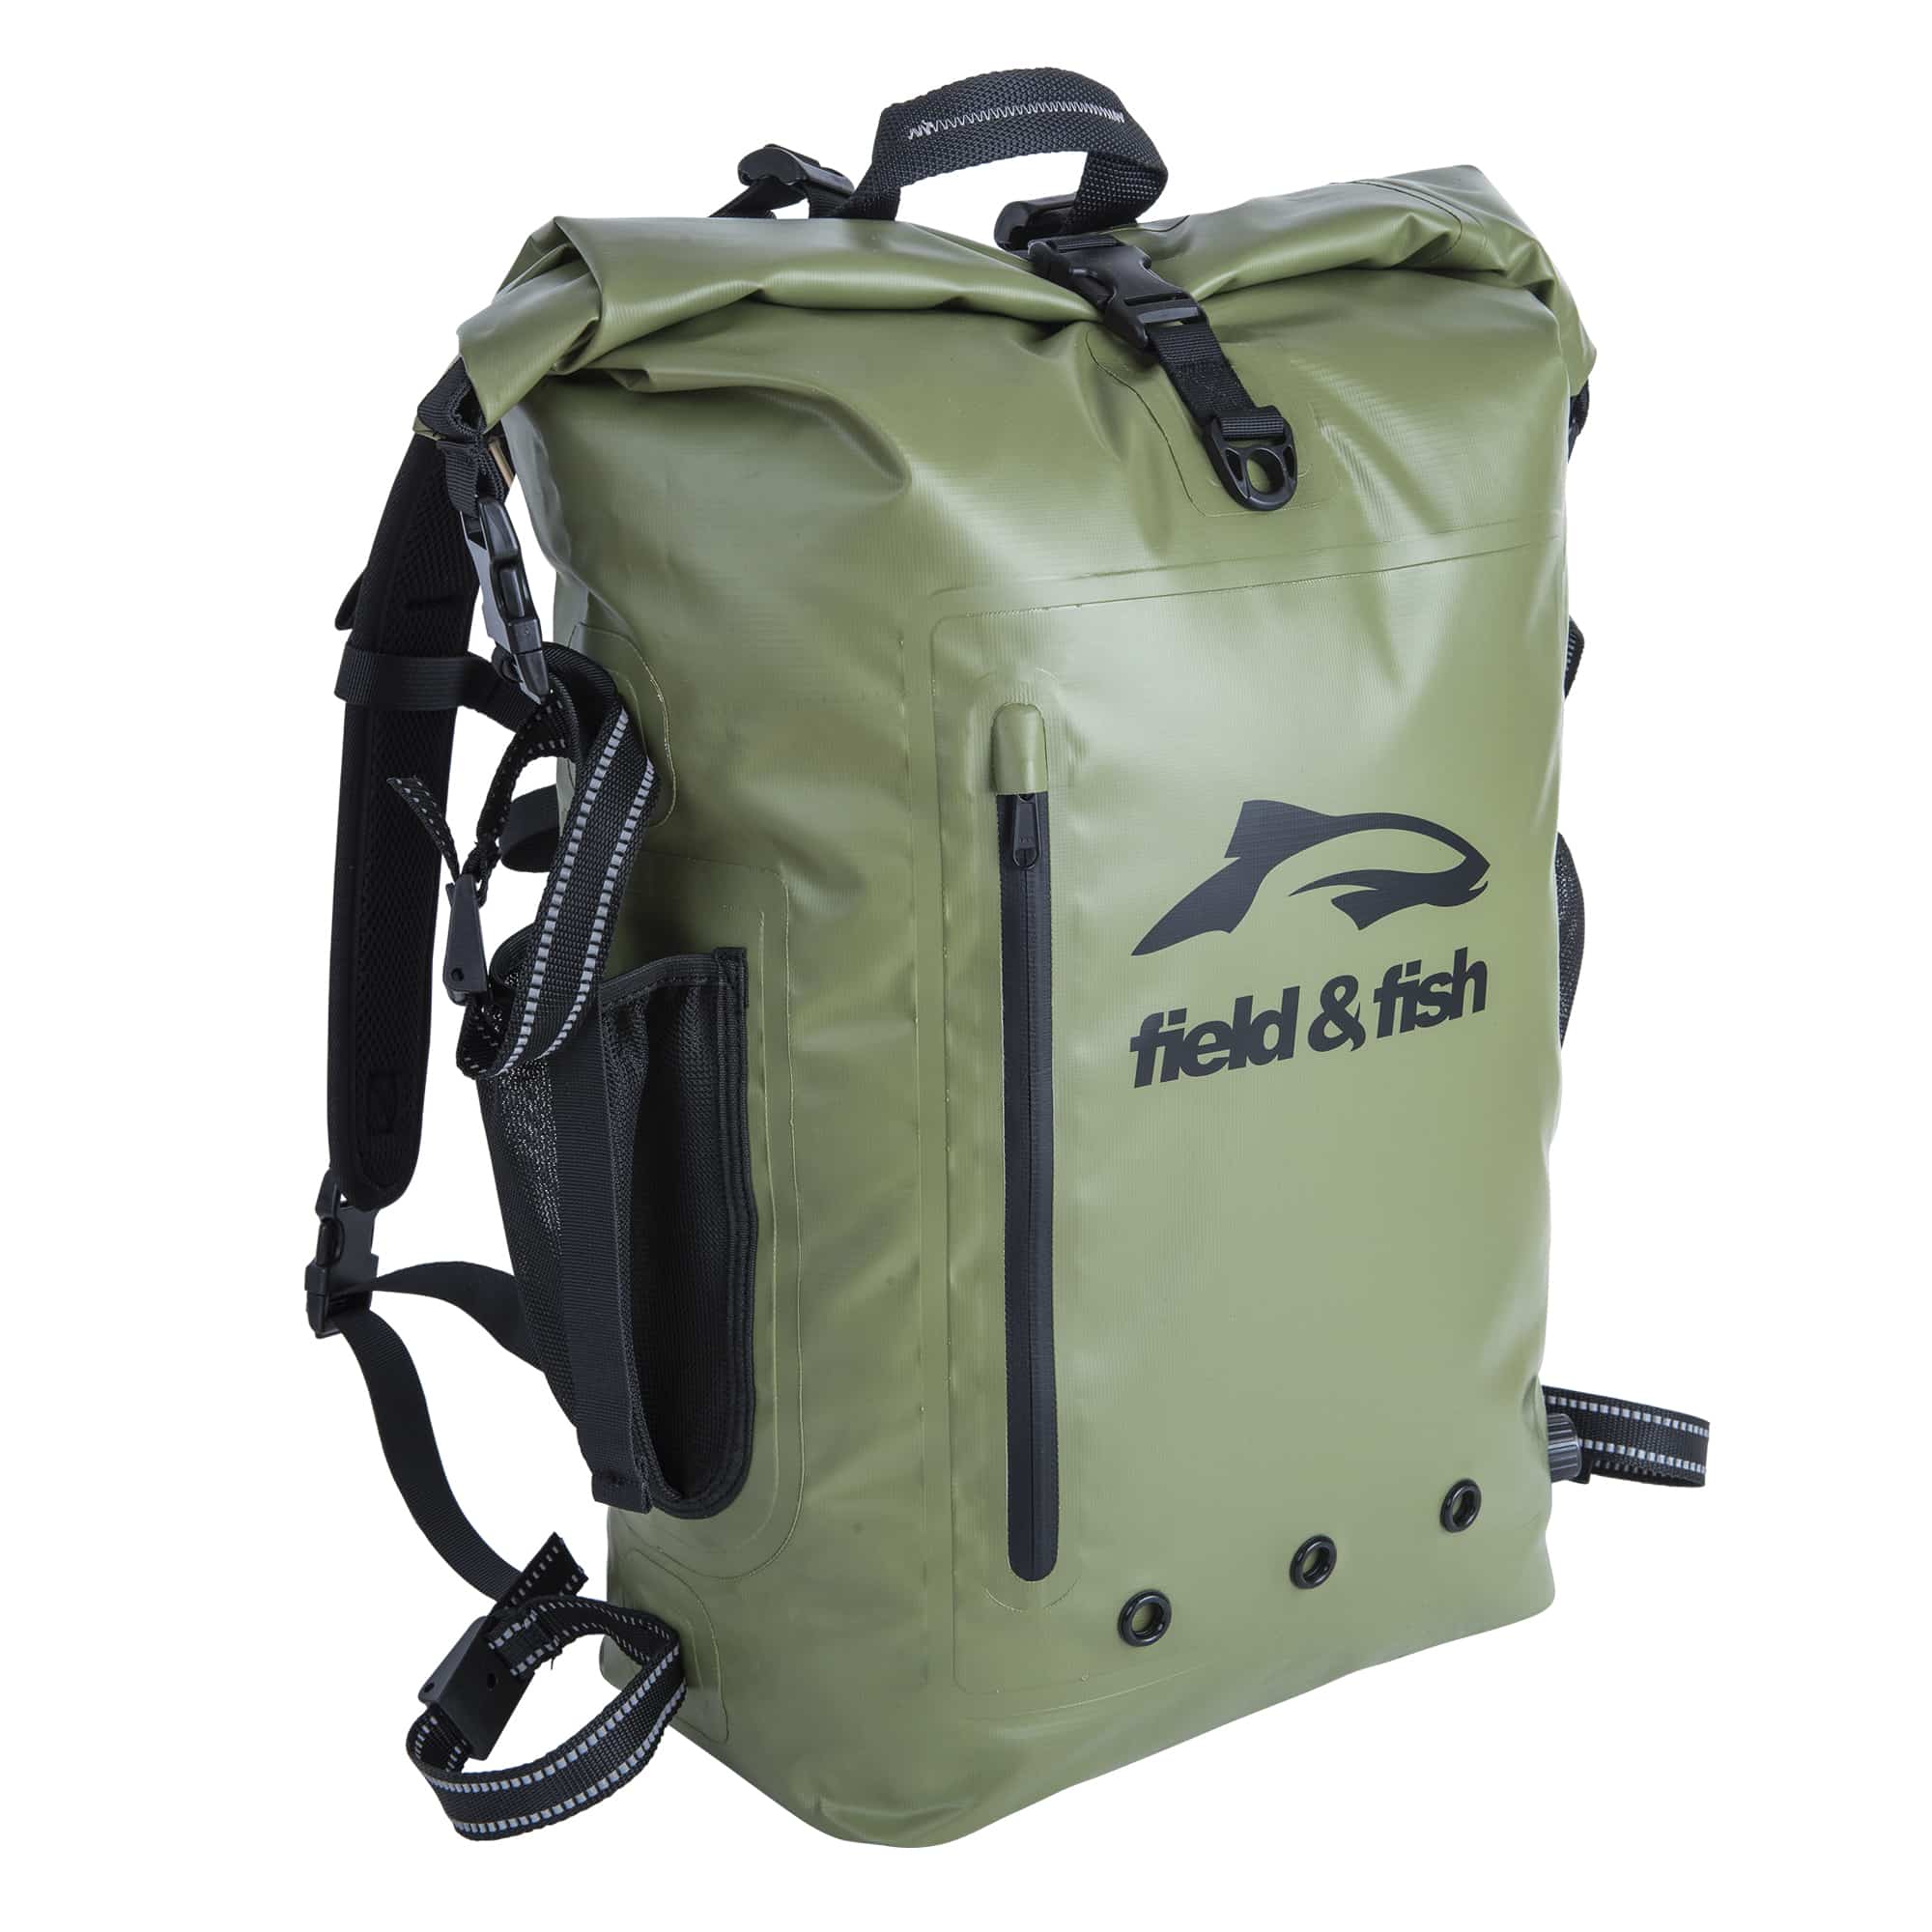 Taïga 40L waterproof backpack - Field & Fish